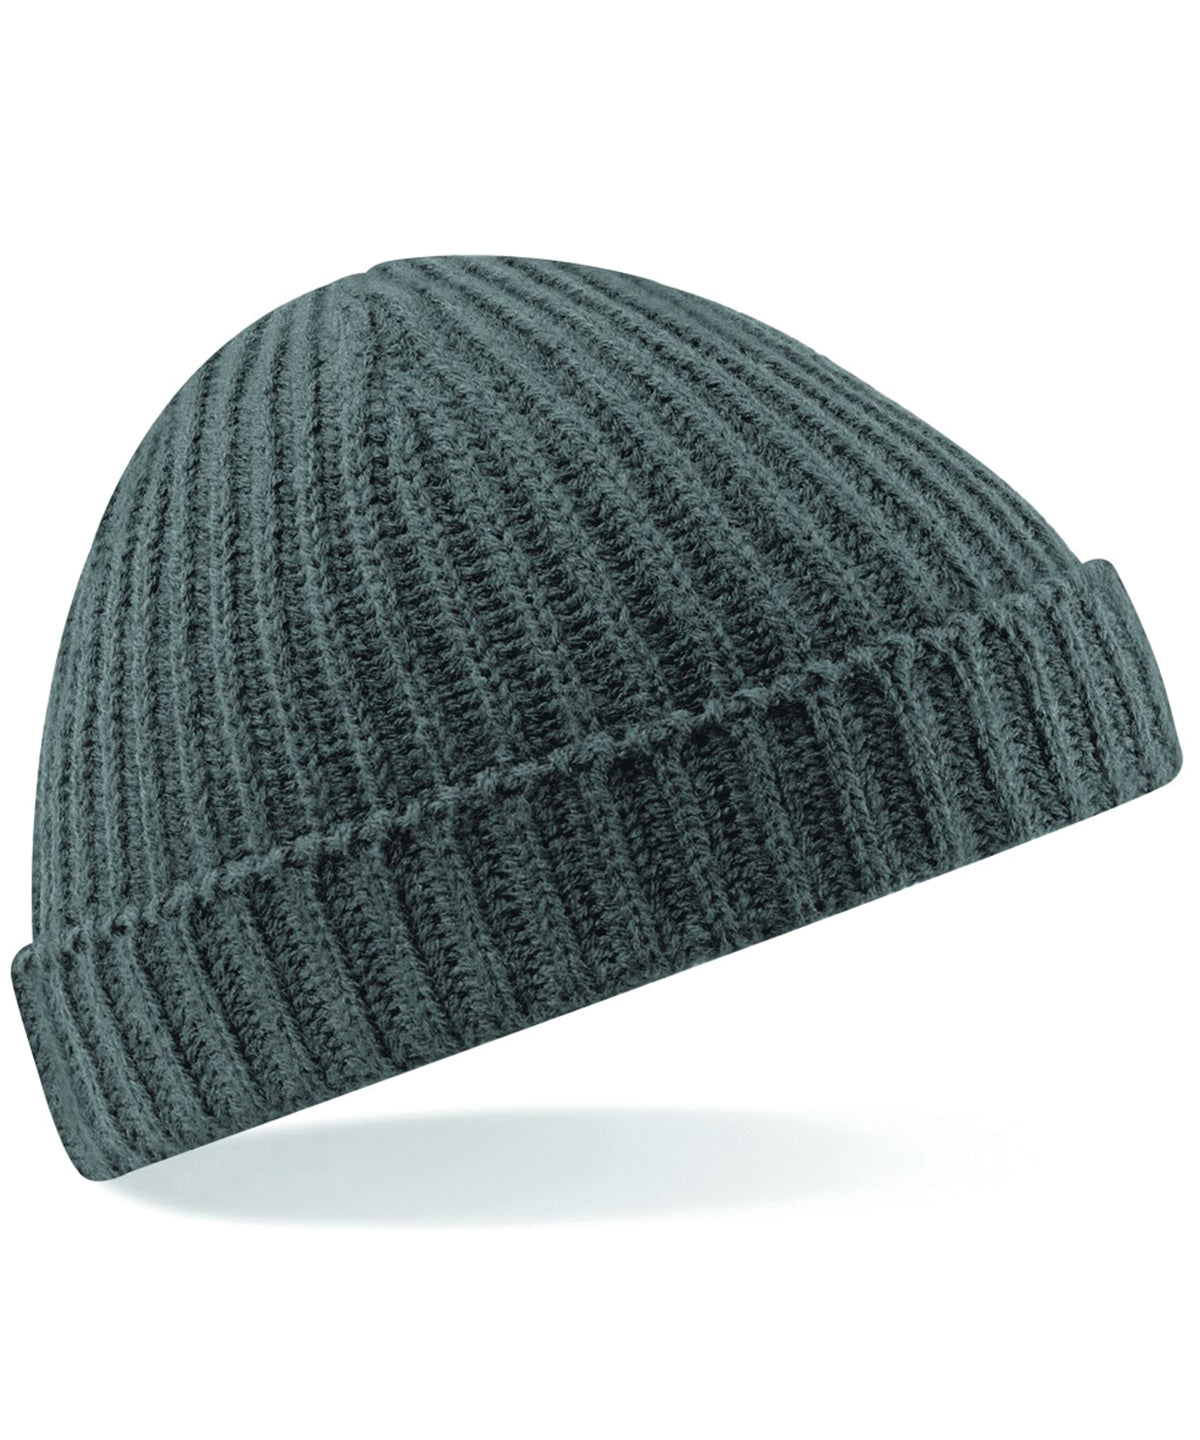 Personalised Hats - Dark Grey Beechfield Trawler beanie